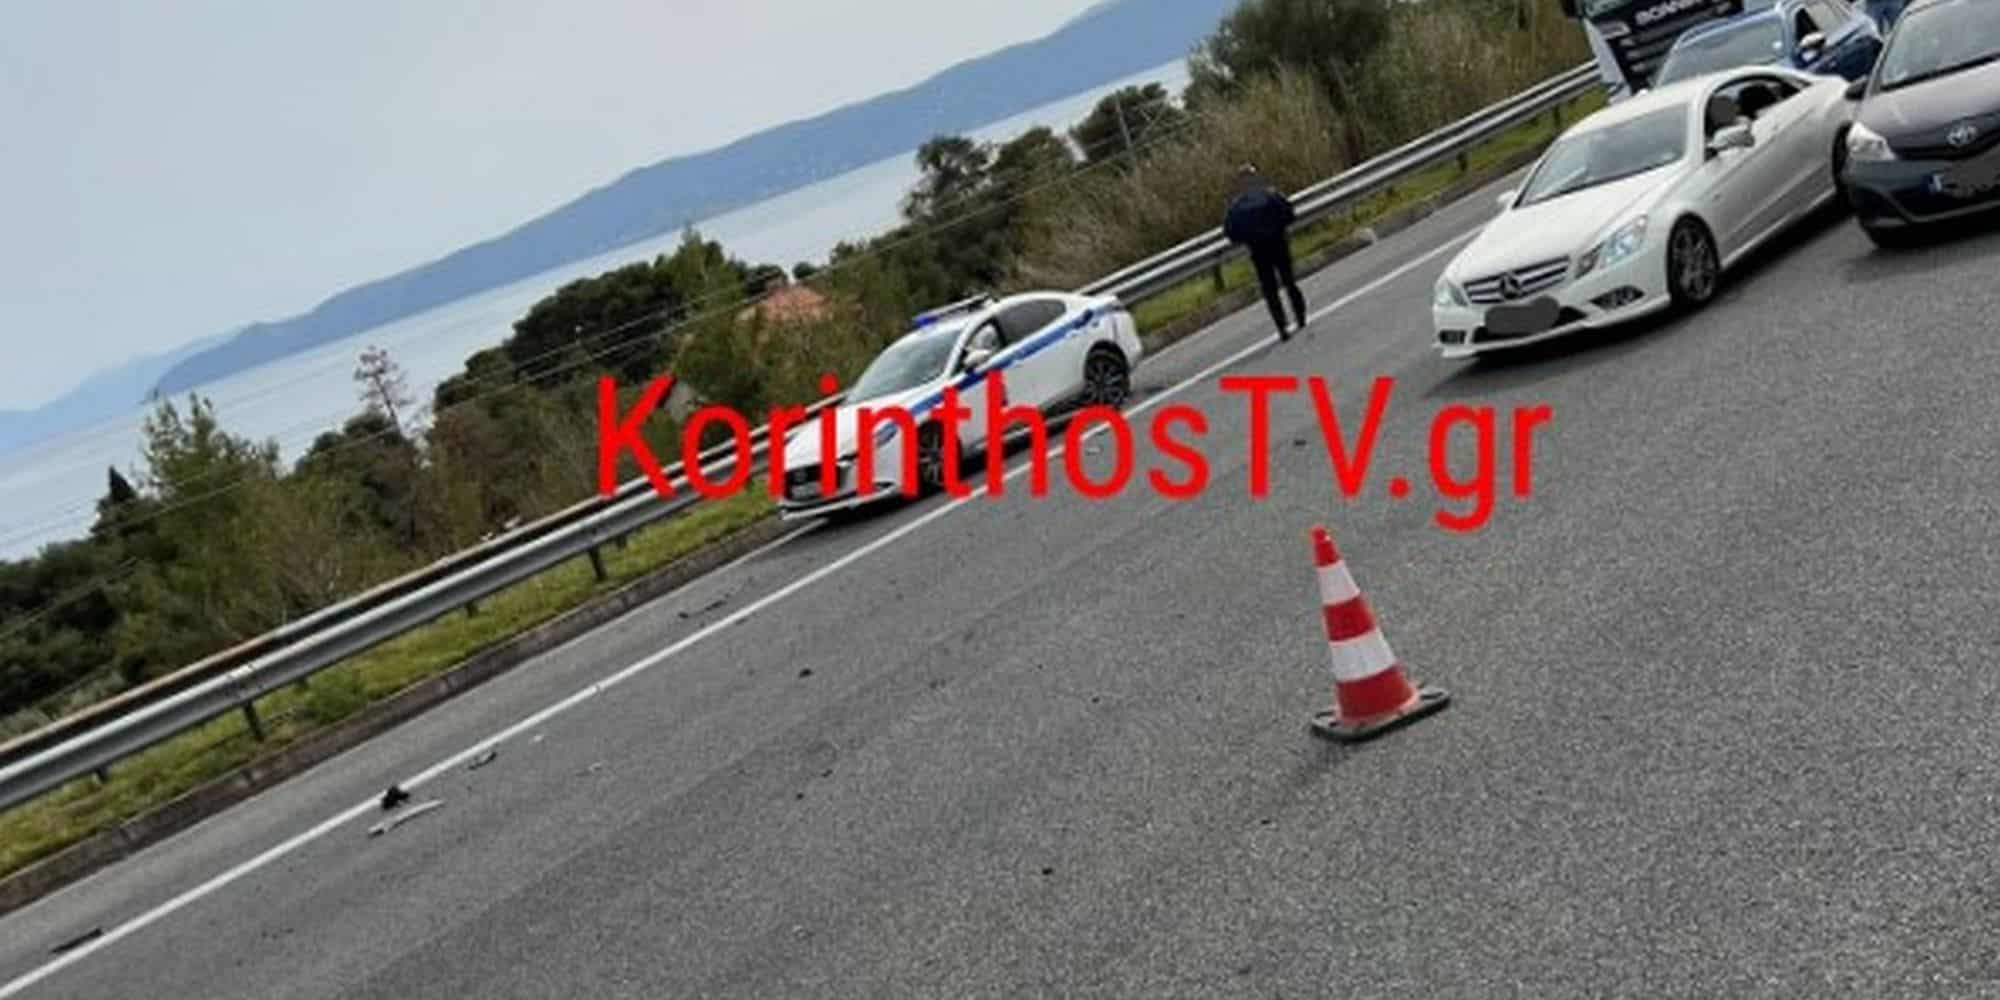 Σοβαρό τροχαίο με 2 νεκρούς στην Εθνική Οδό Αθηνών-Κορίνθου, γυναίκα οδηγός μπήκε ανάποδα και σκότωσε μοτοσυκλετιστή (εικόνες)